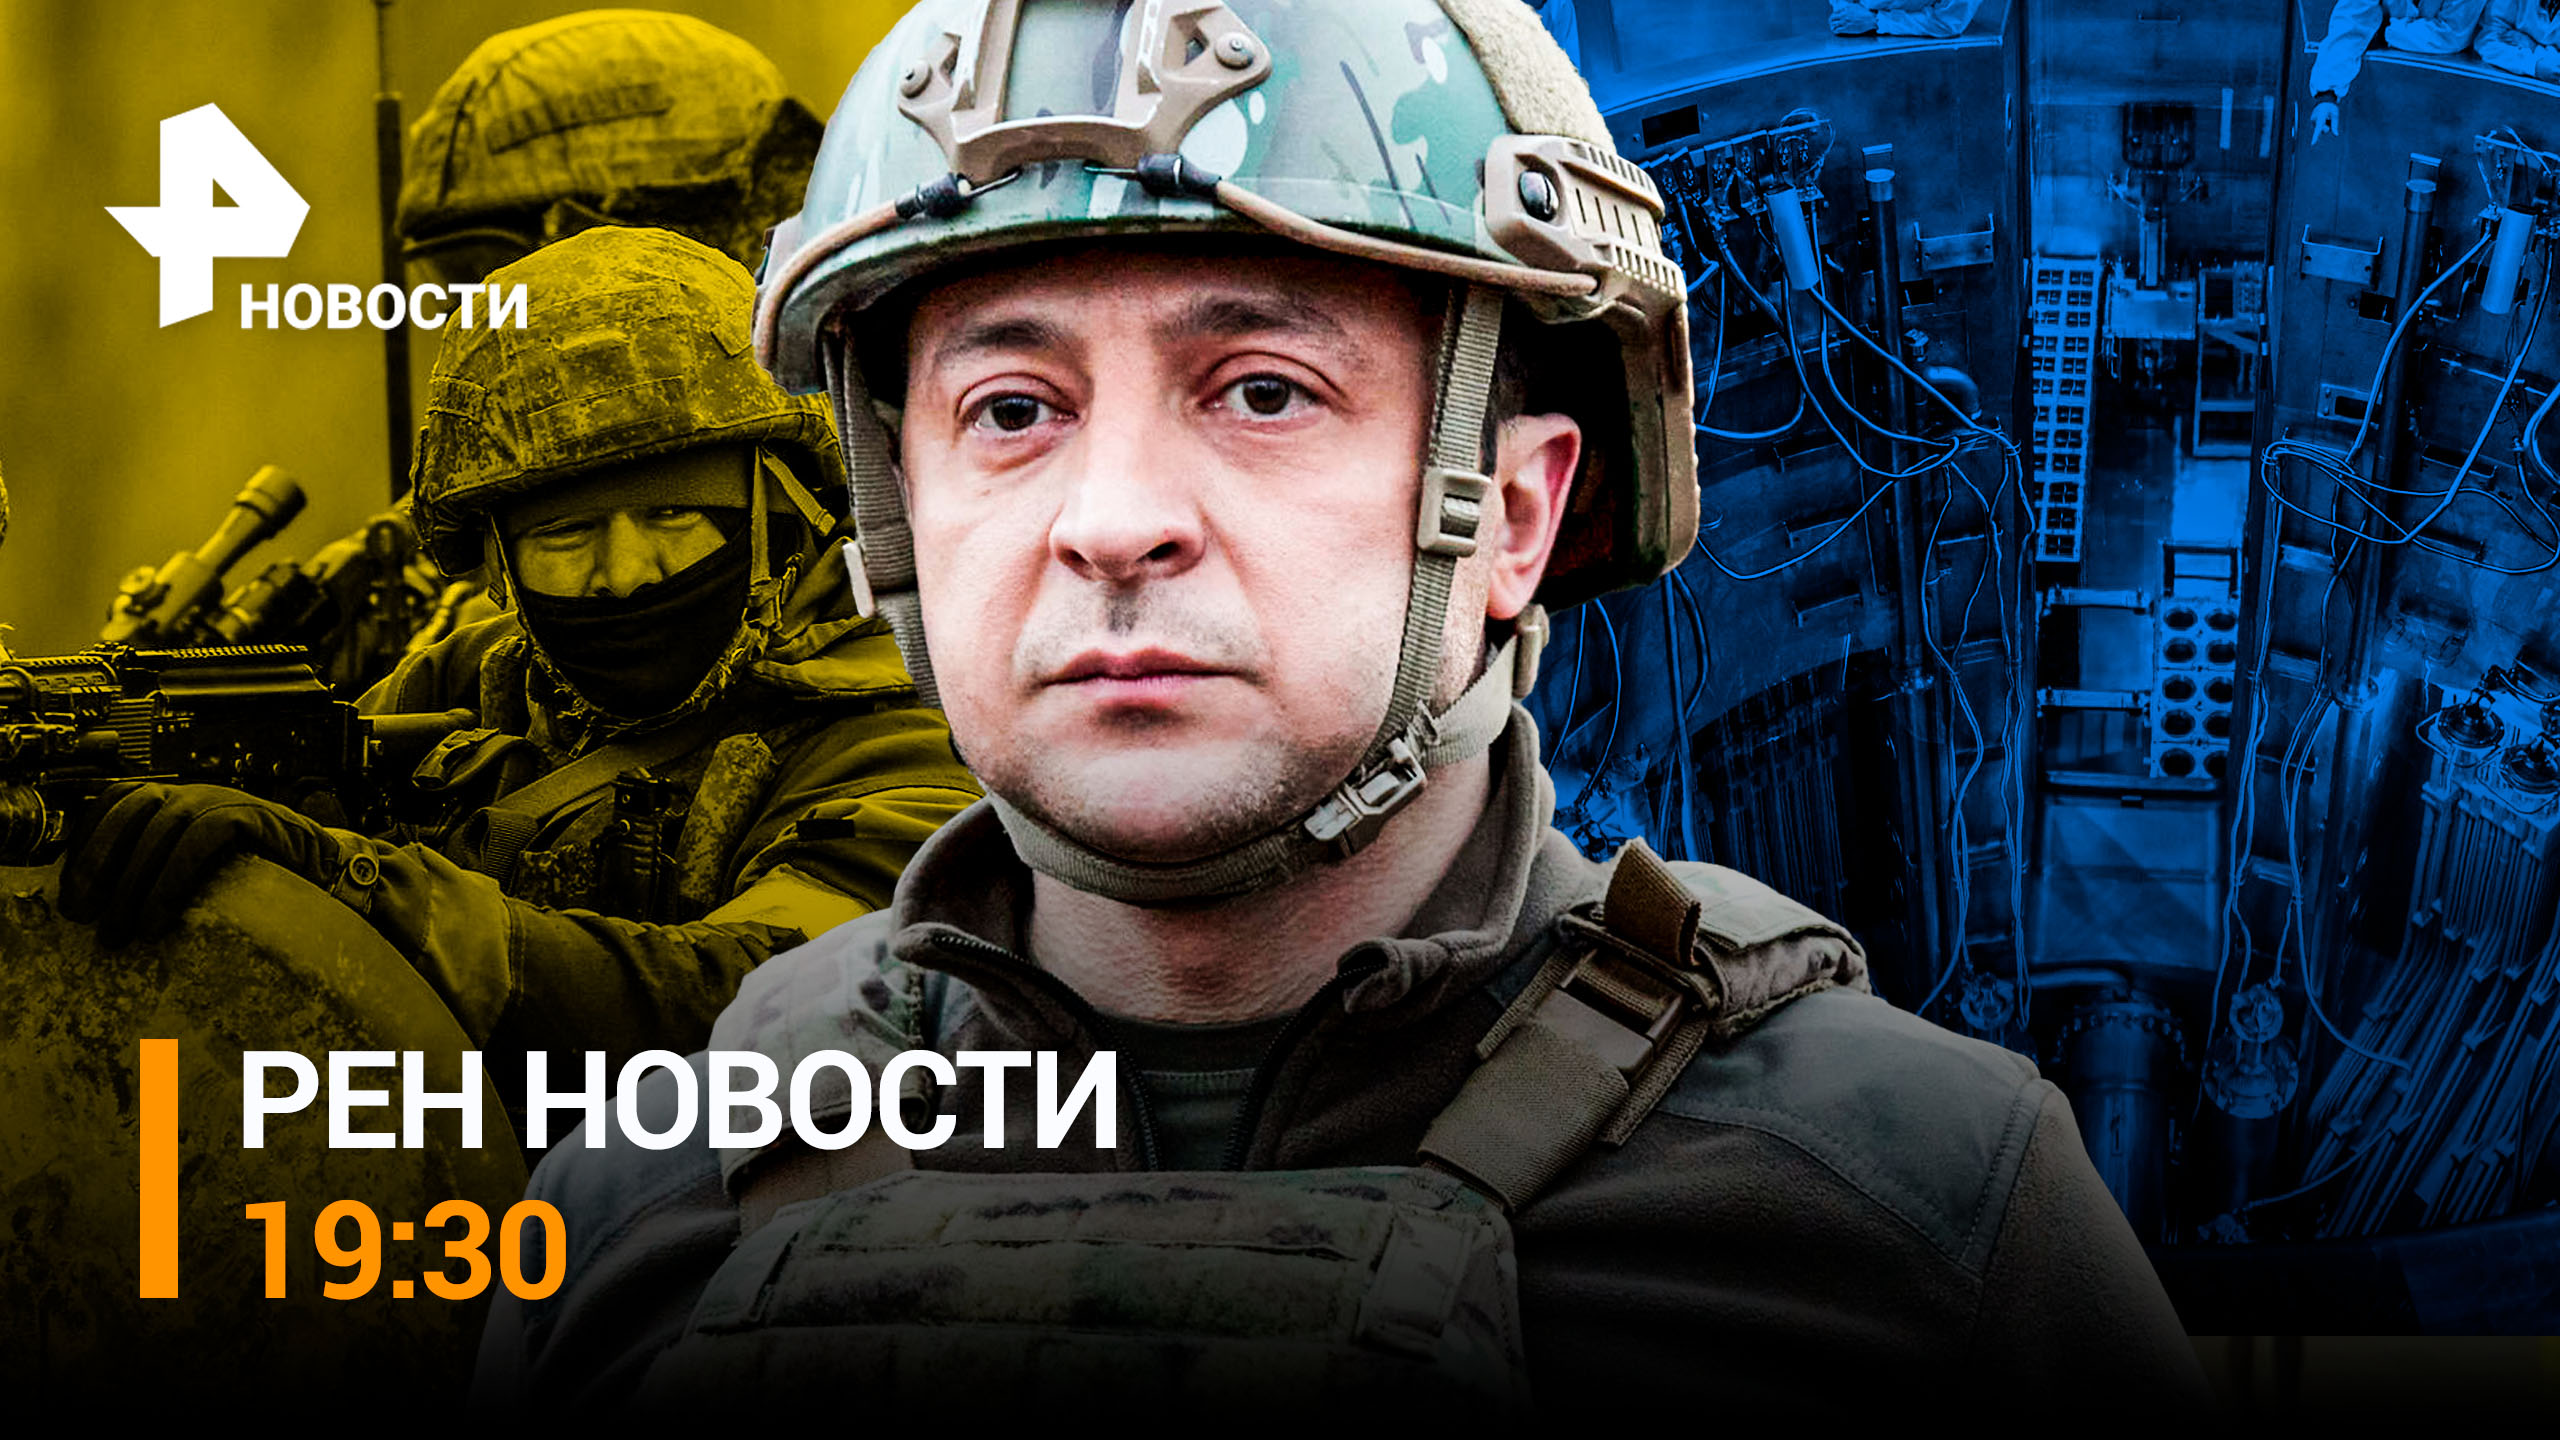 Россия нанесла мощный удар по трем украинским объектам / РЕН НОВОСТИ от 24.03 19:30